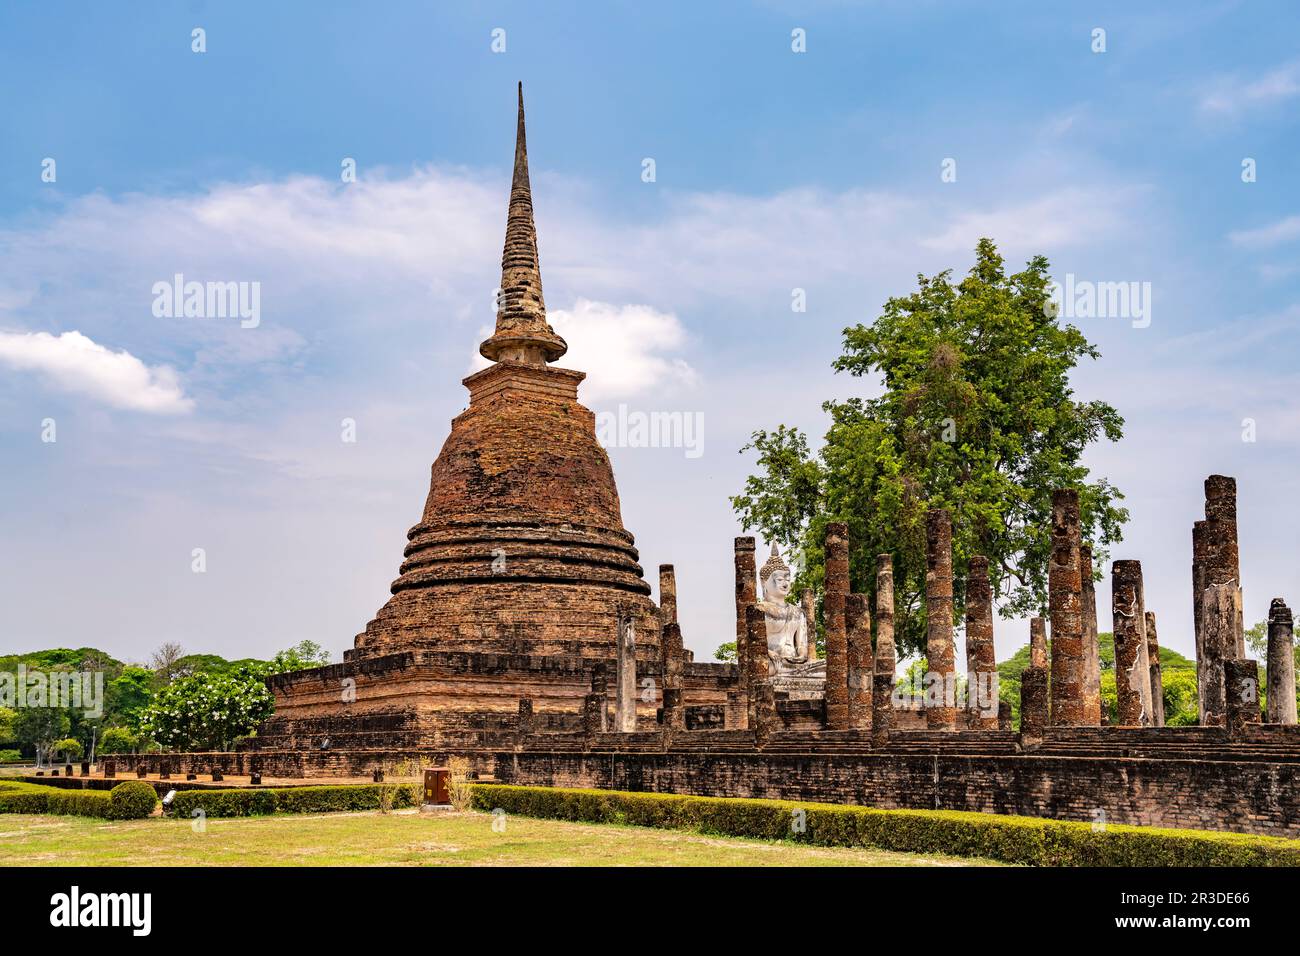 Buddha Statue und Chedi des buddhistischen Tempel Wat Sa Si, UNESCO Welterbe Geschichtspark Sukhothai, Thailand, Asien   |  Buddha statue and chedi of Stock Photo